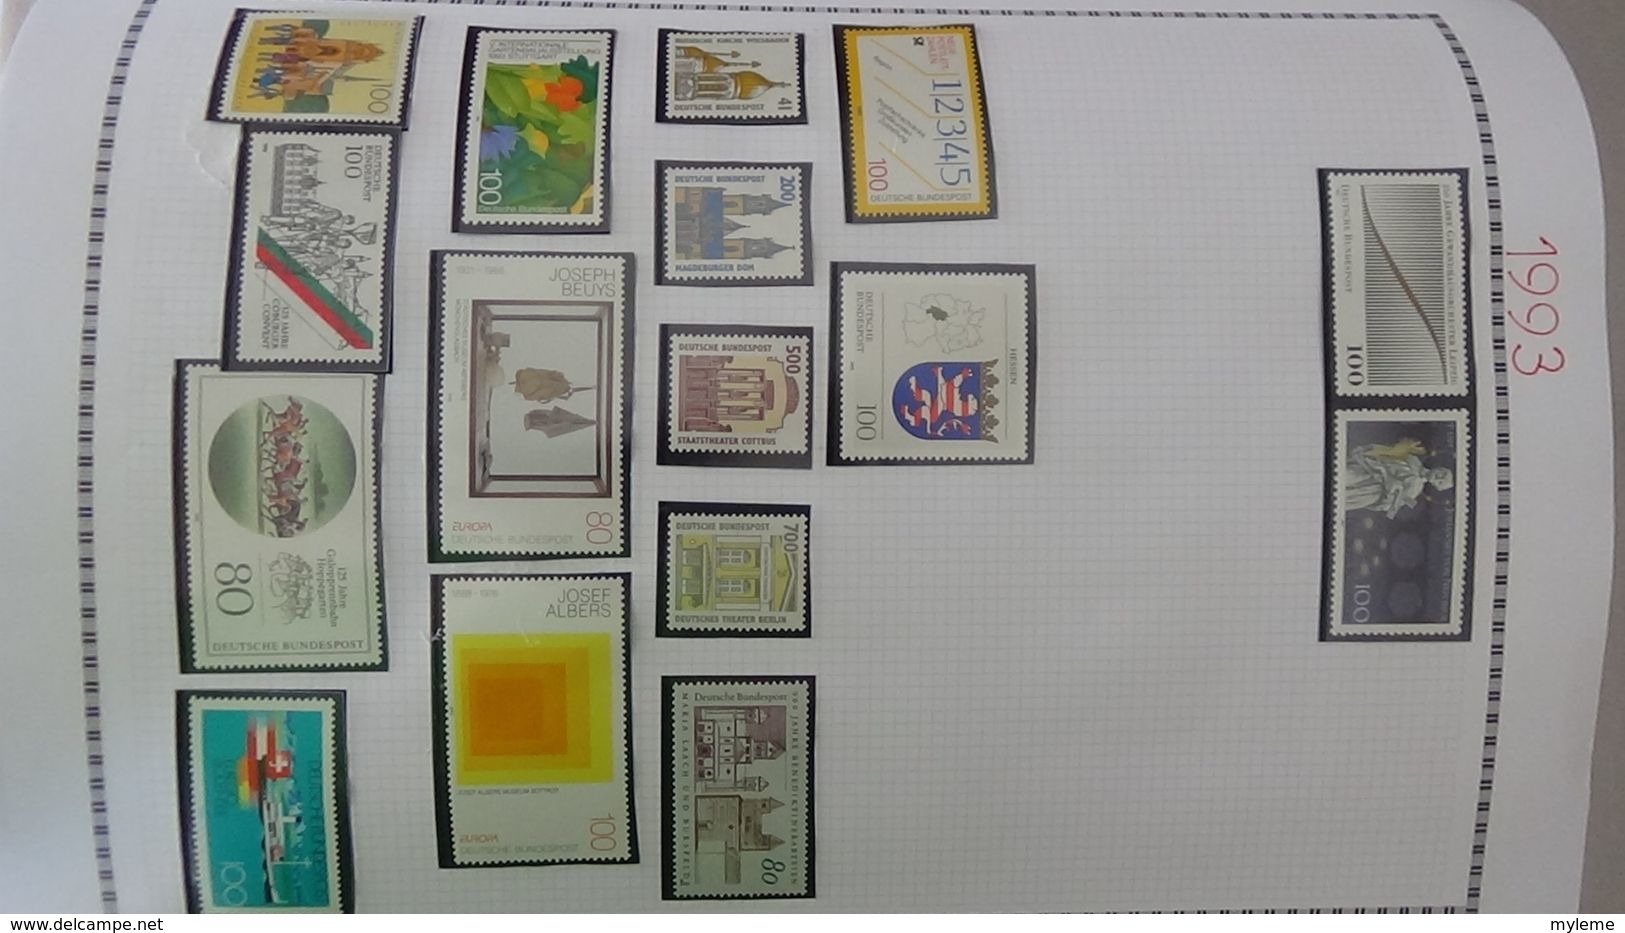 H14 Collection timbres, blocs et carnets ** Allemagne Fédérale de 1980 à 2000